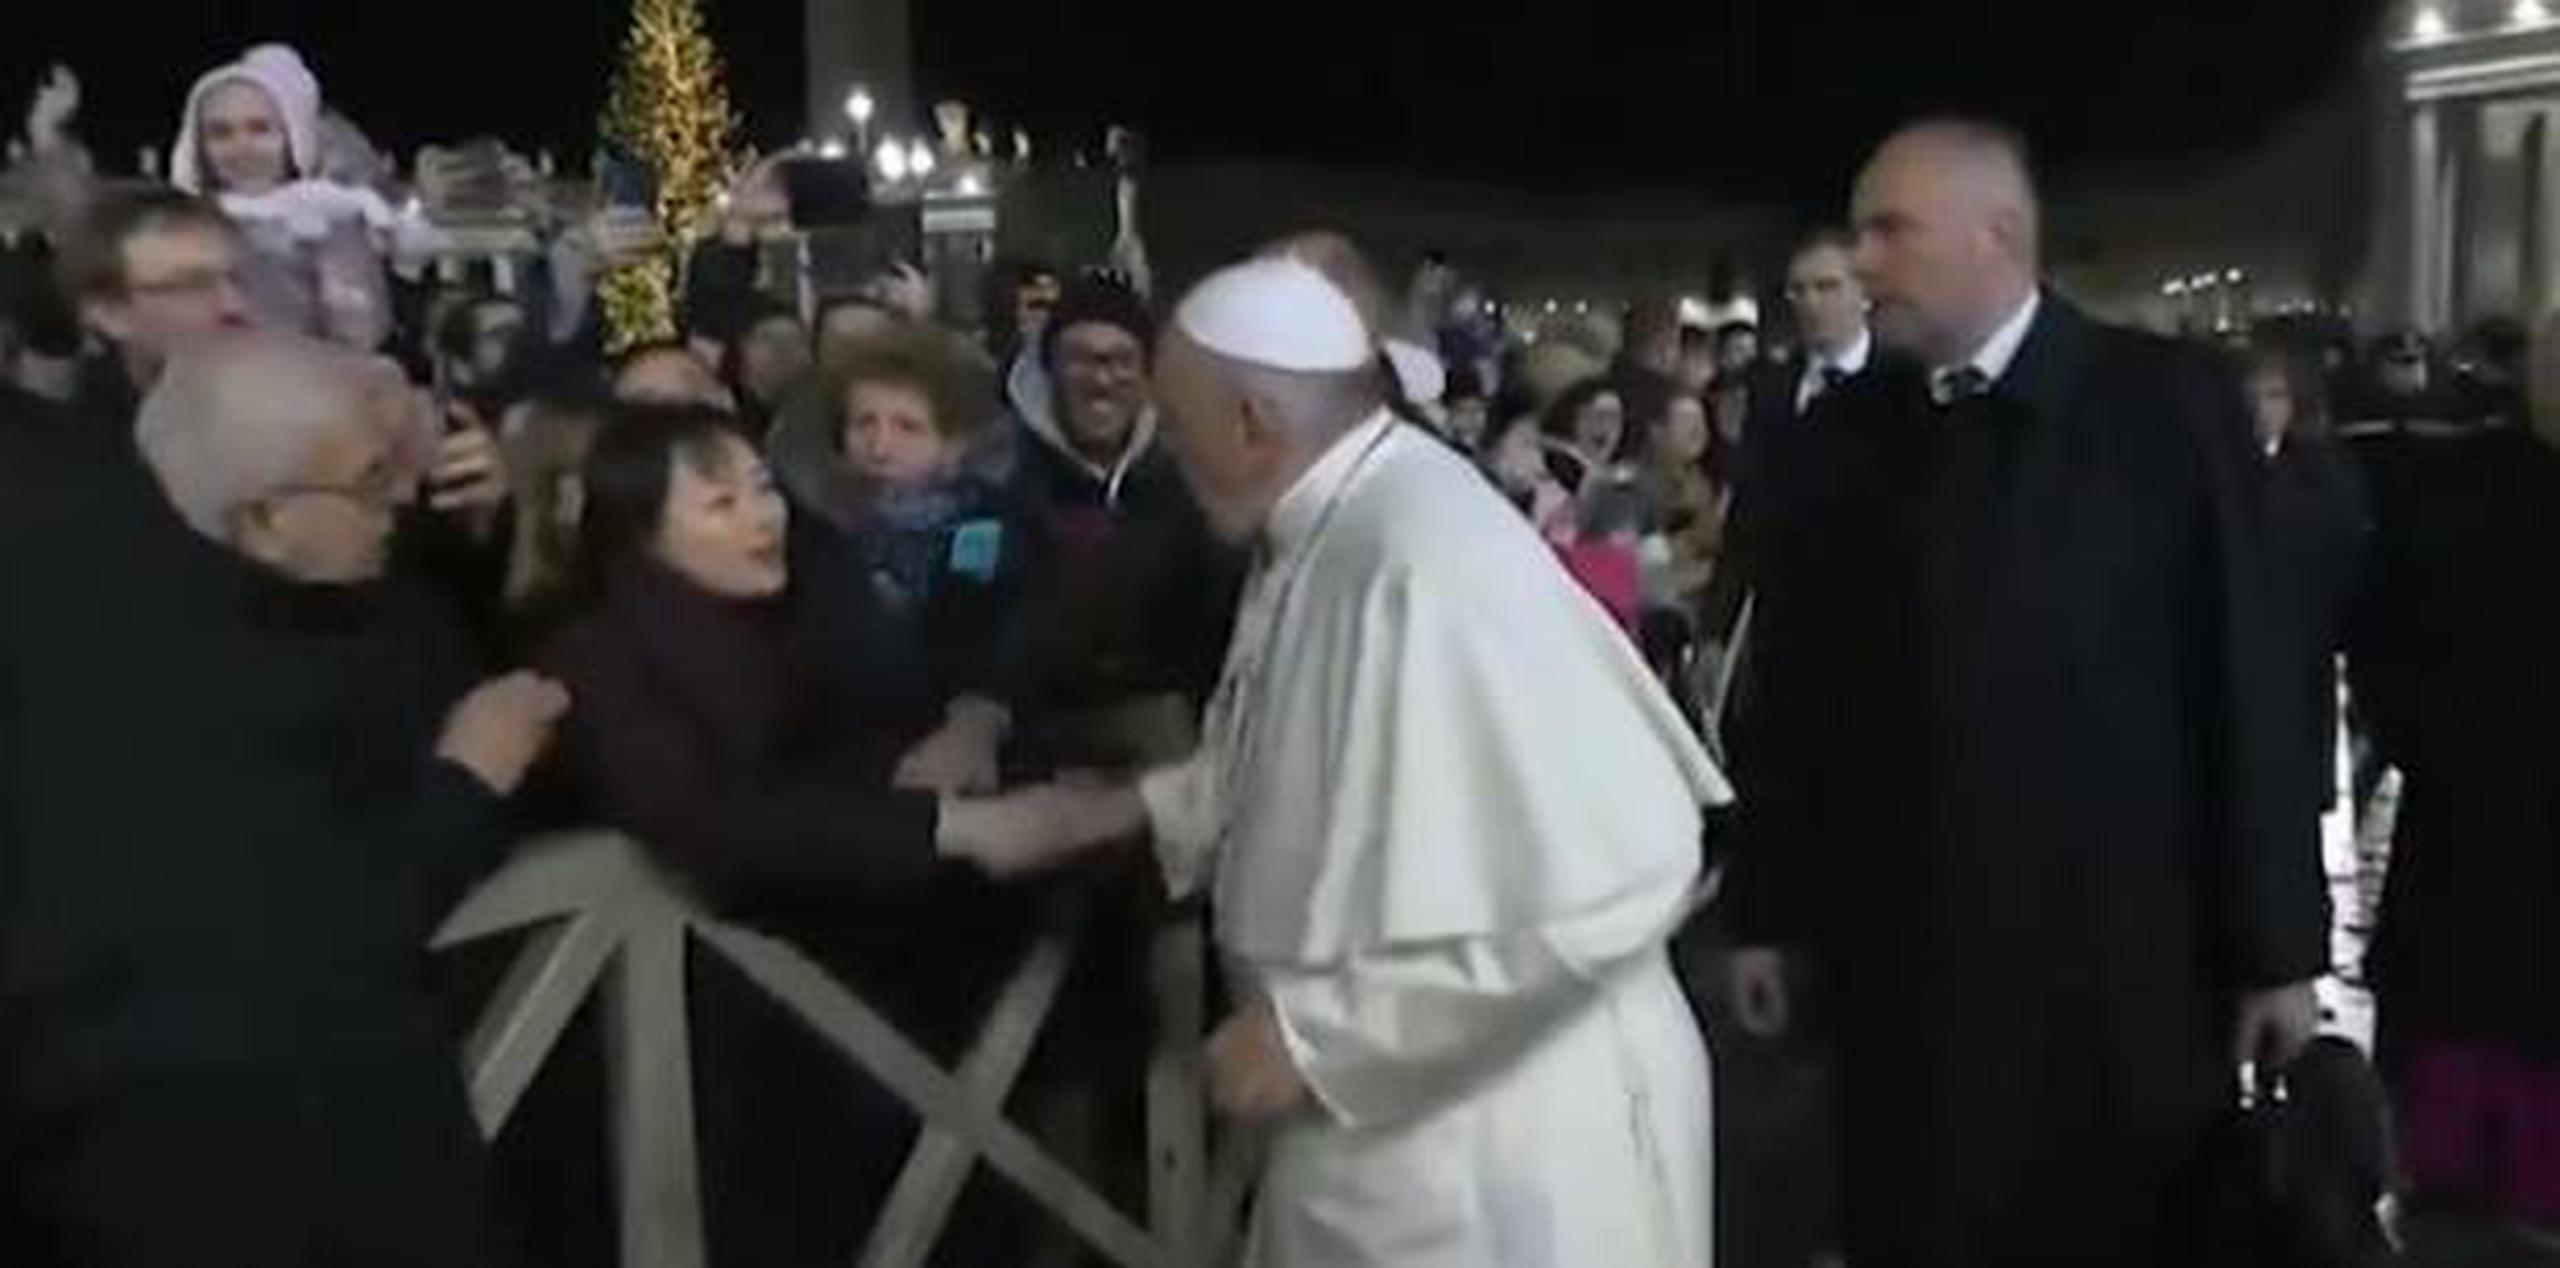 Las cámaras capturaron el momento cuando la mujer agarró la mano del papa. (Twitter)